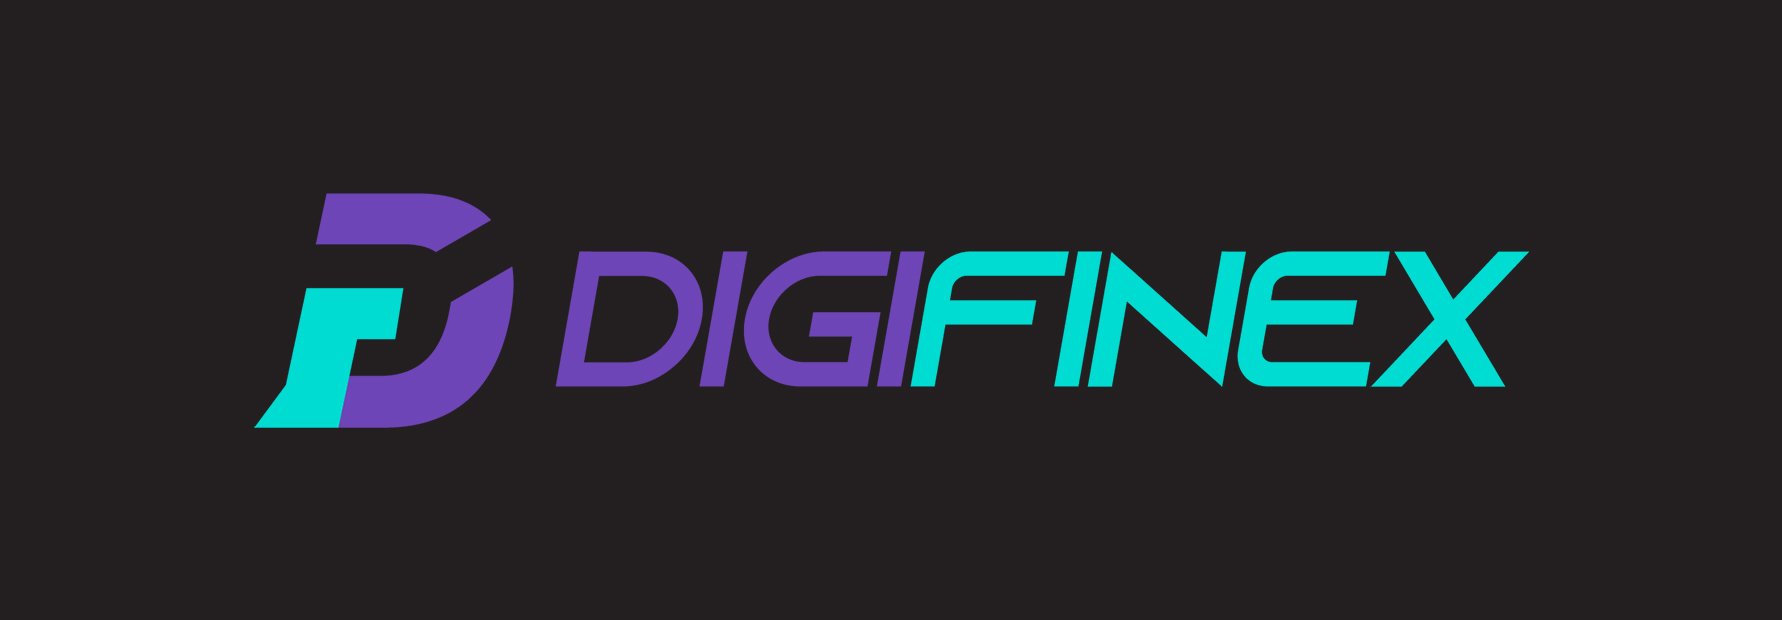 digifinex-logo.jpg